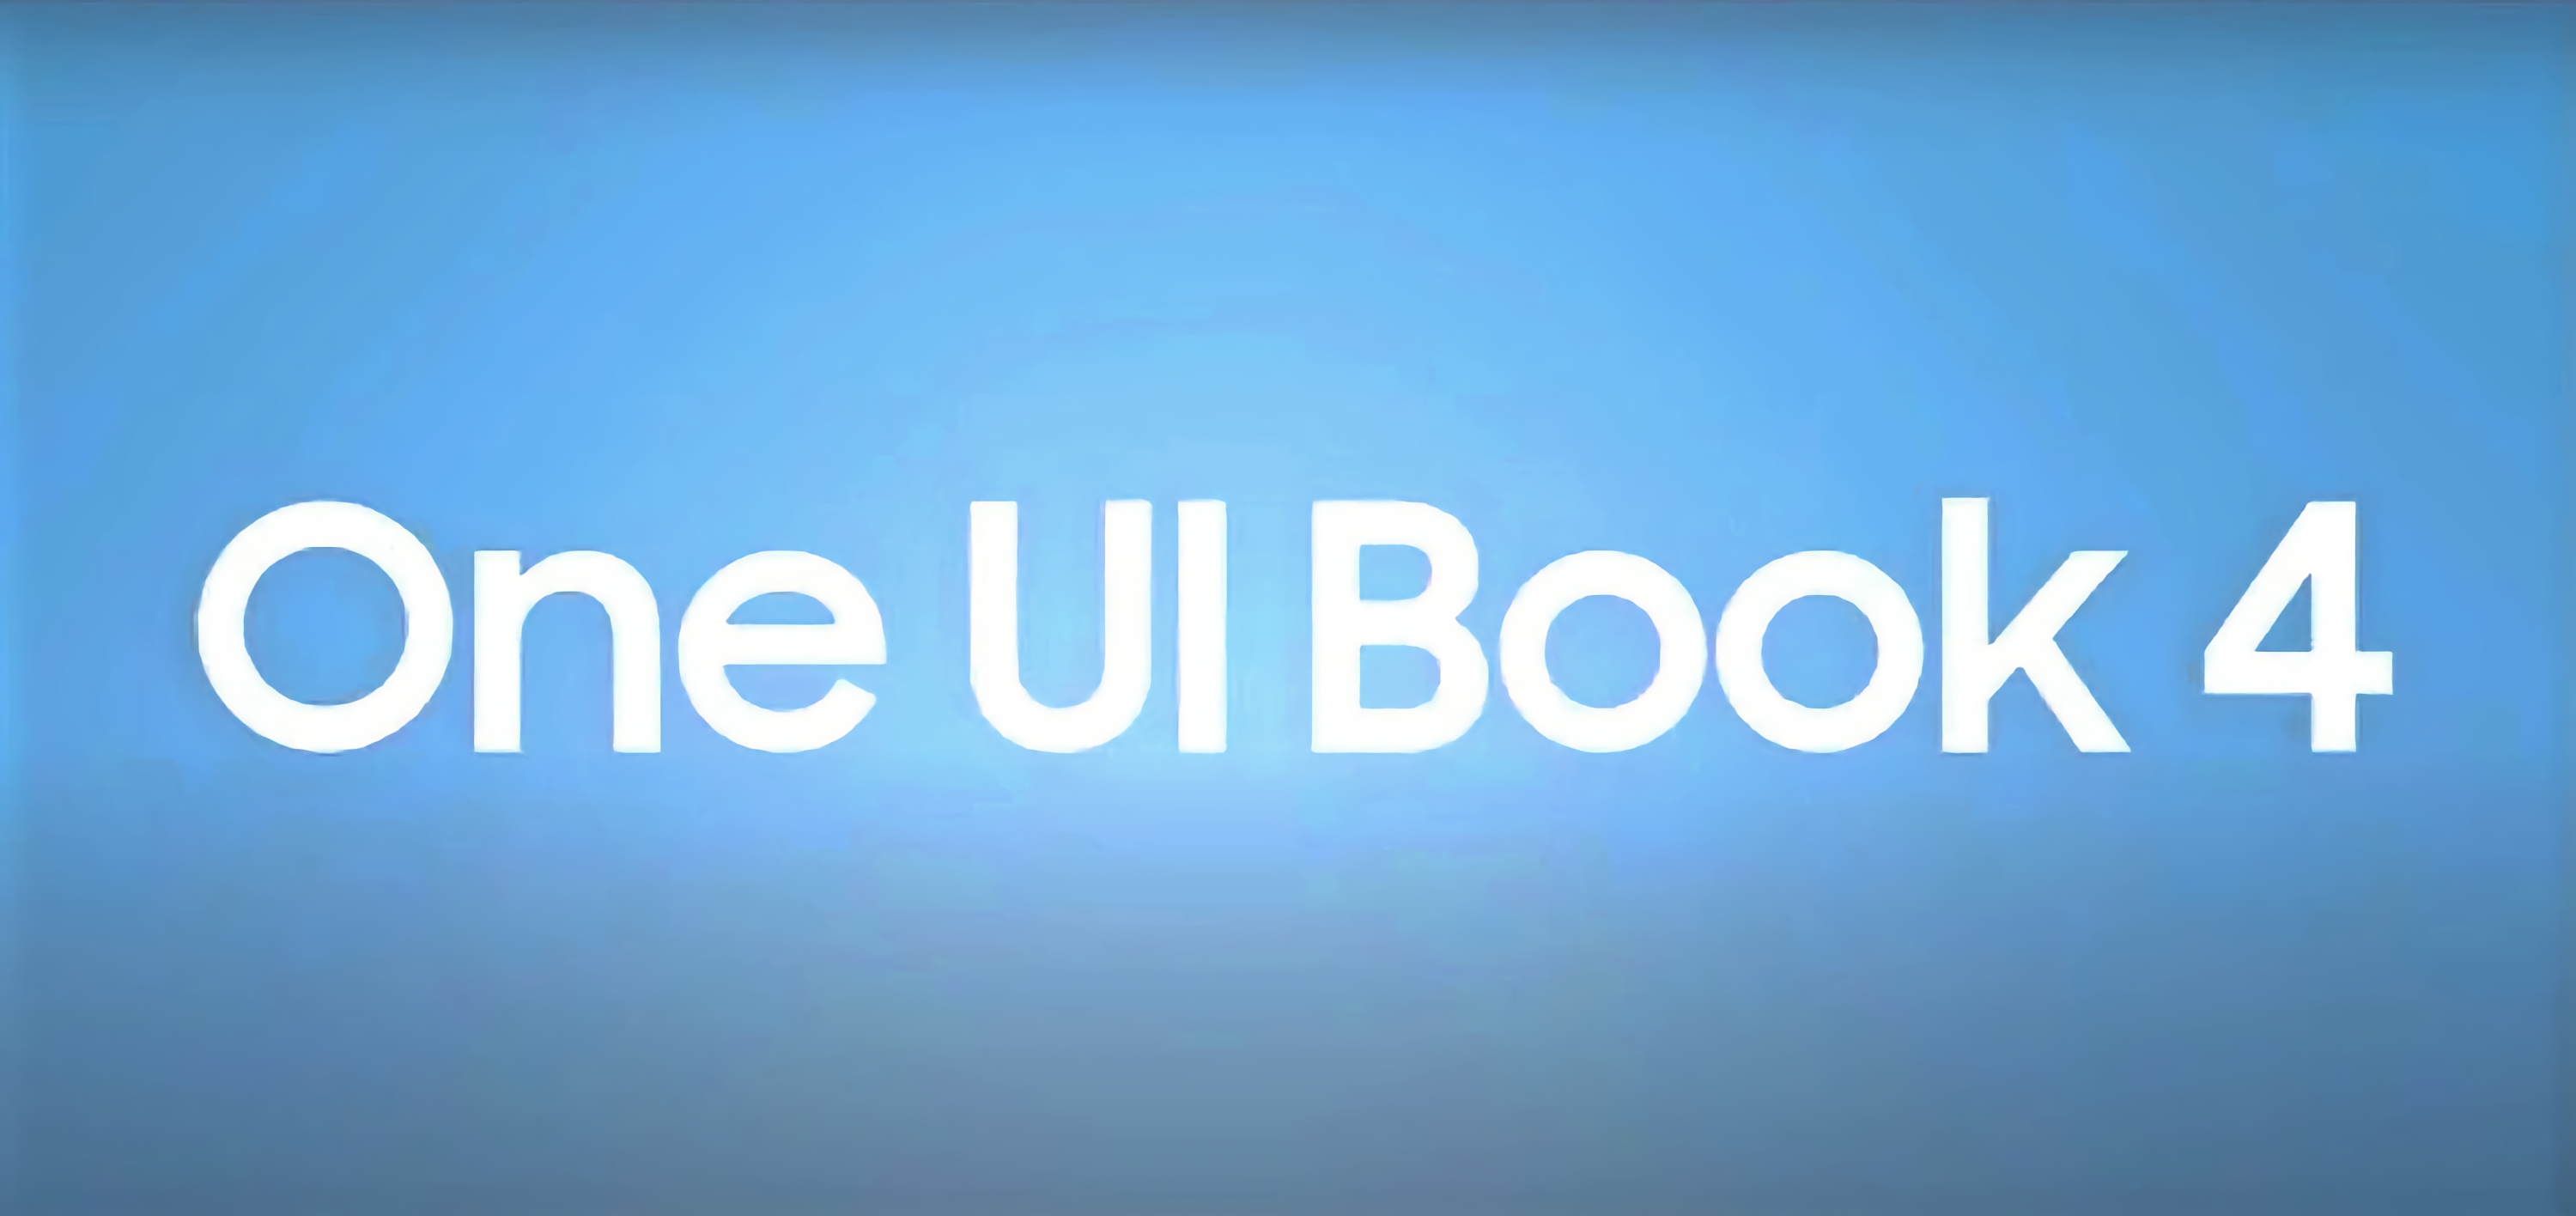 Samsung prezentuje One UI Book 4: markową powłokę dla laptopów z systemem Windows